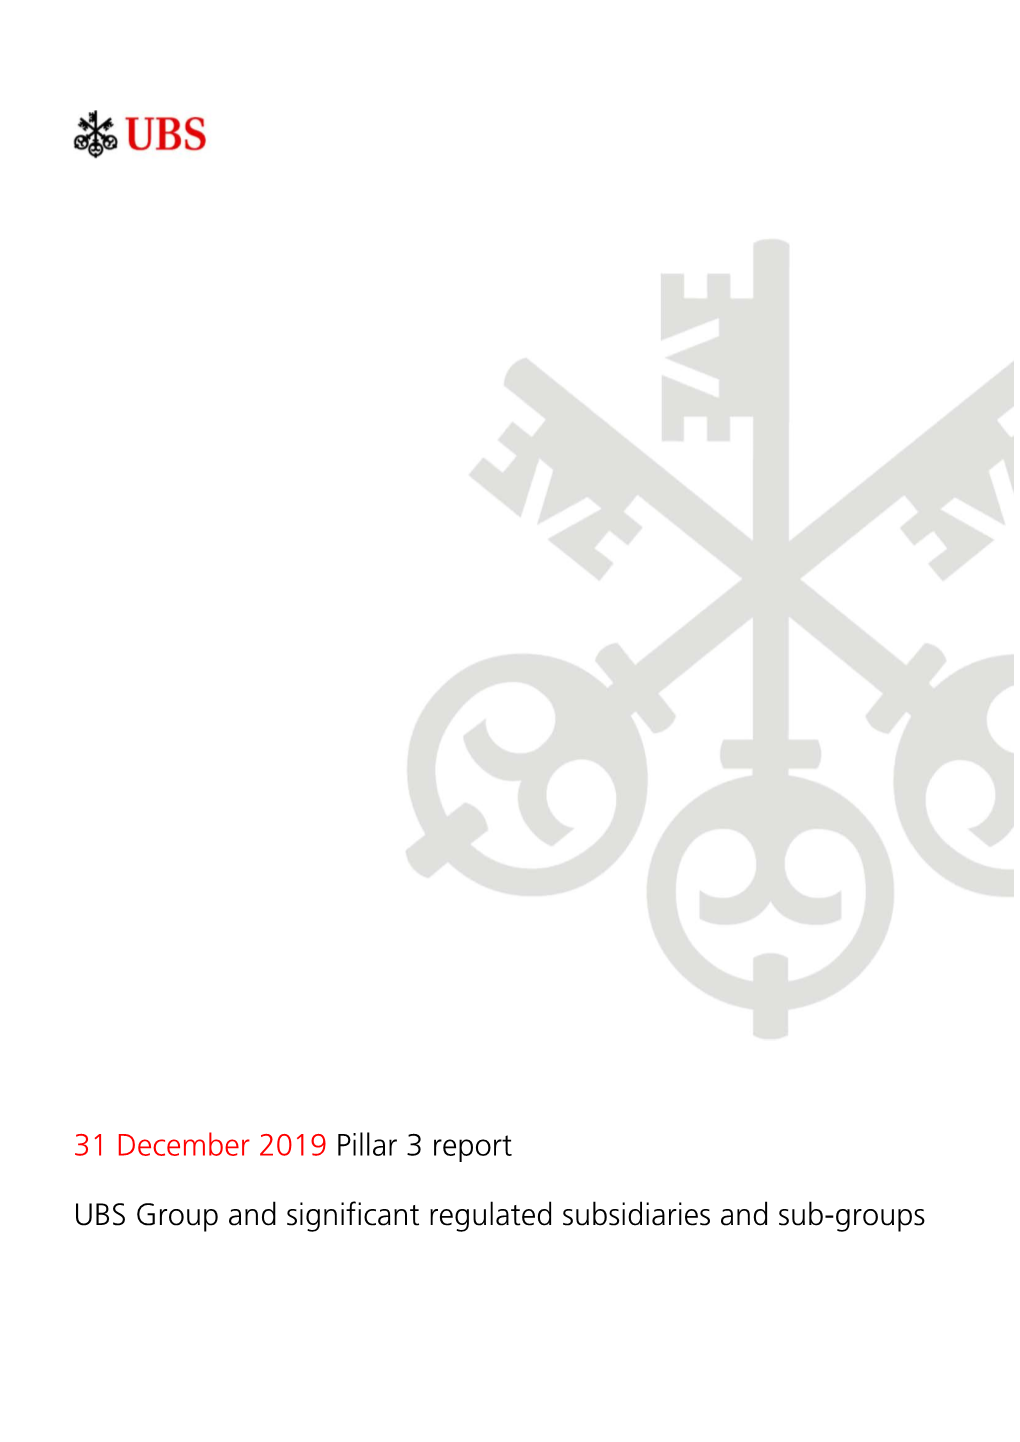 31 December 2019 Pillar 3 Report